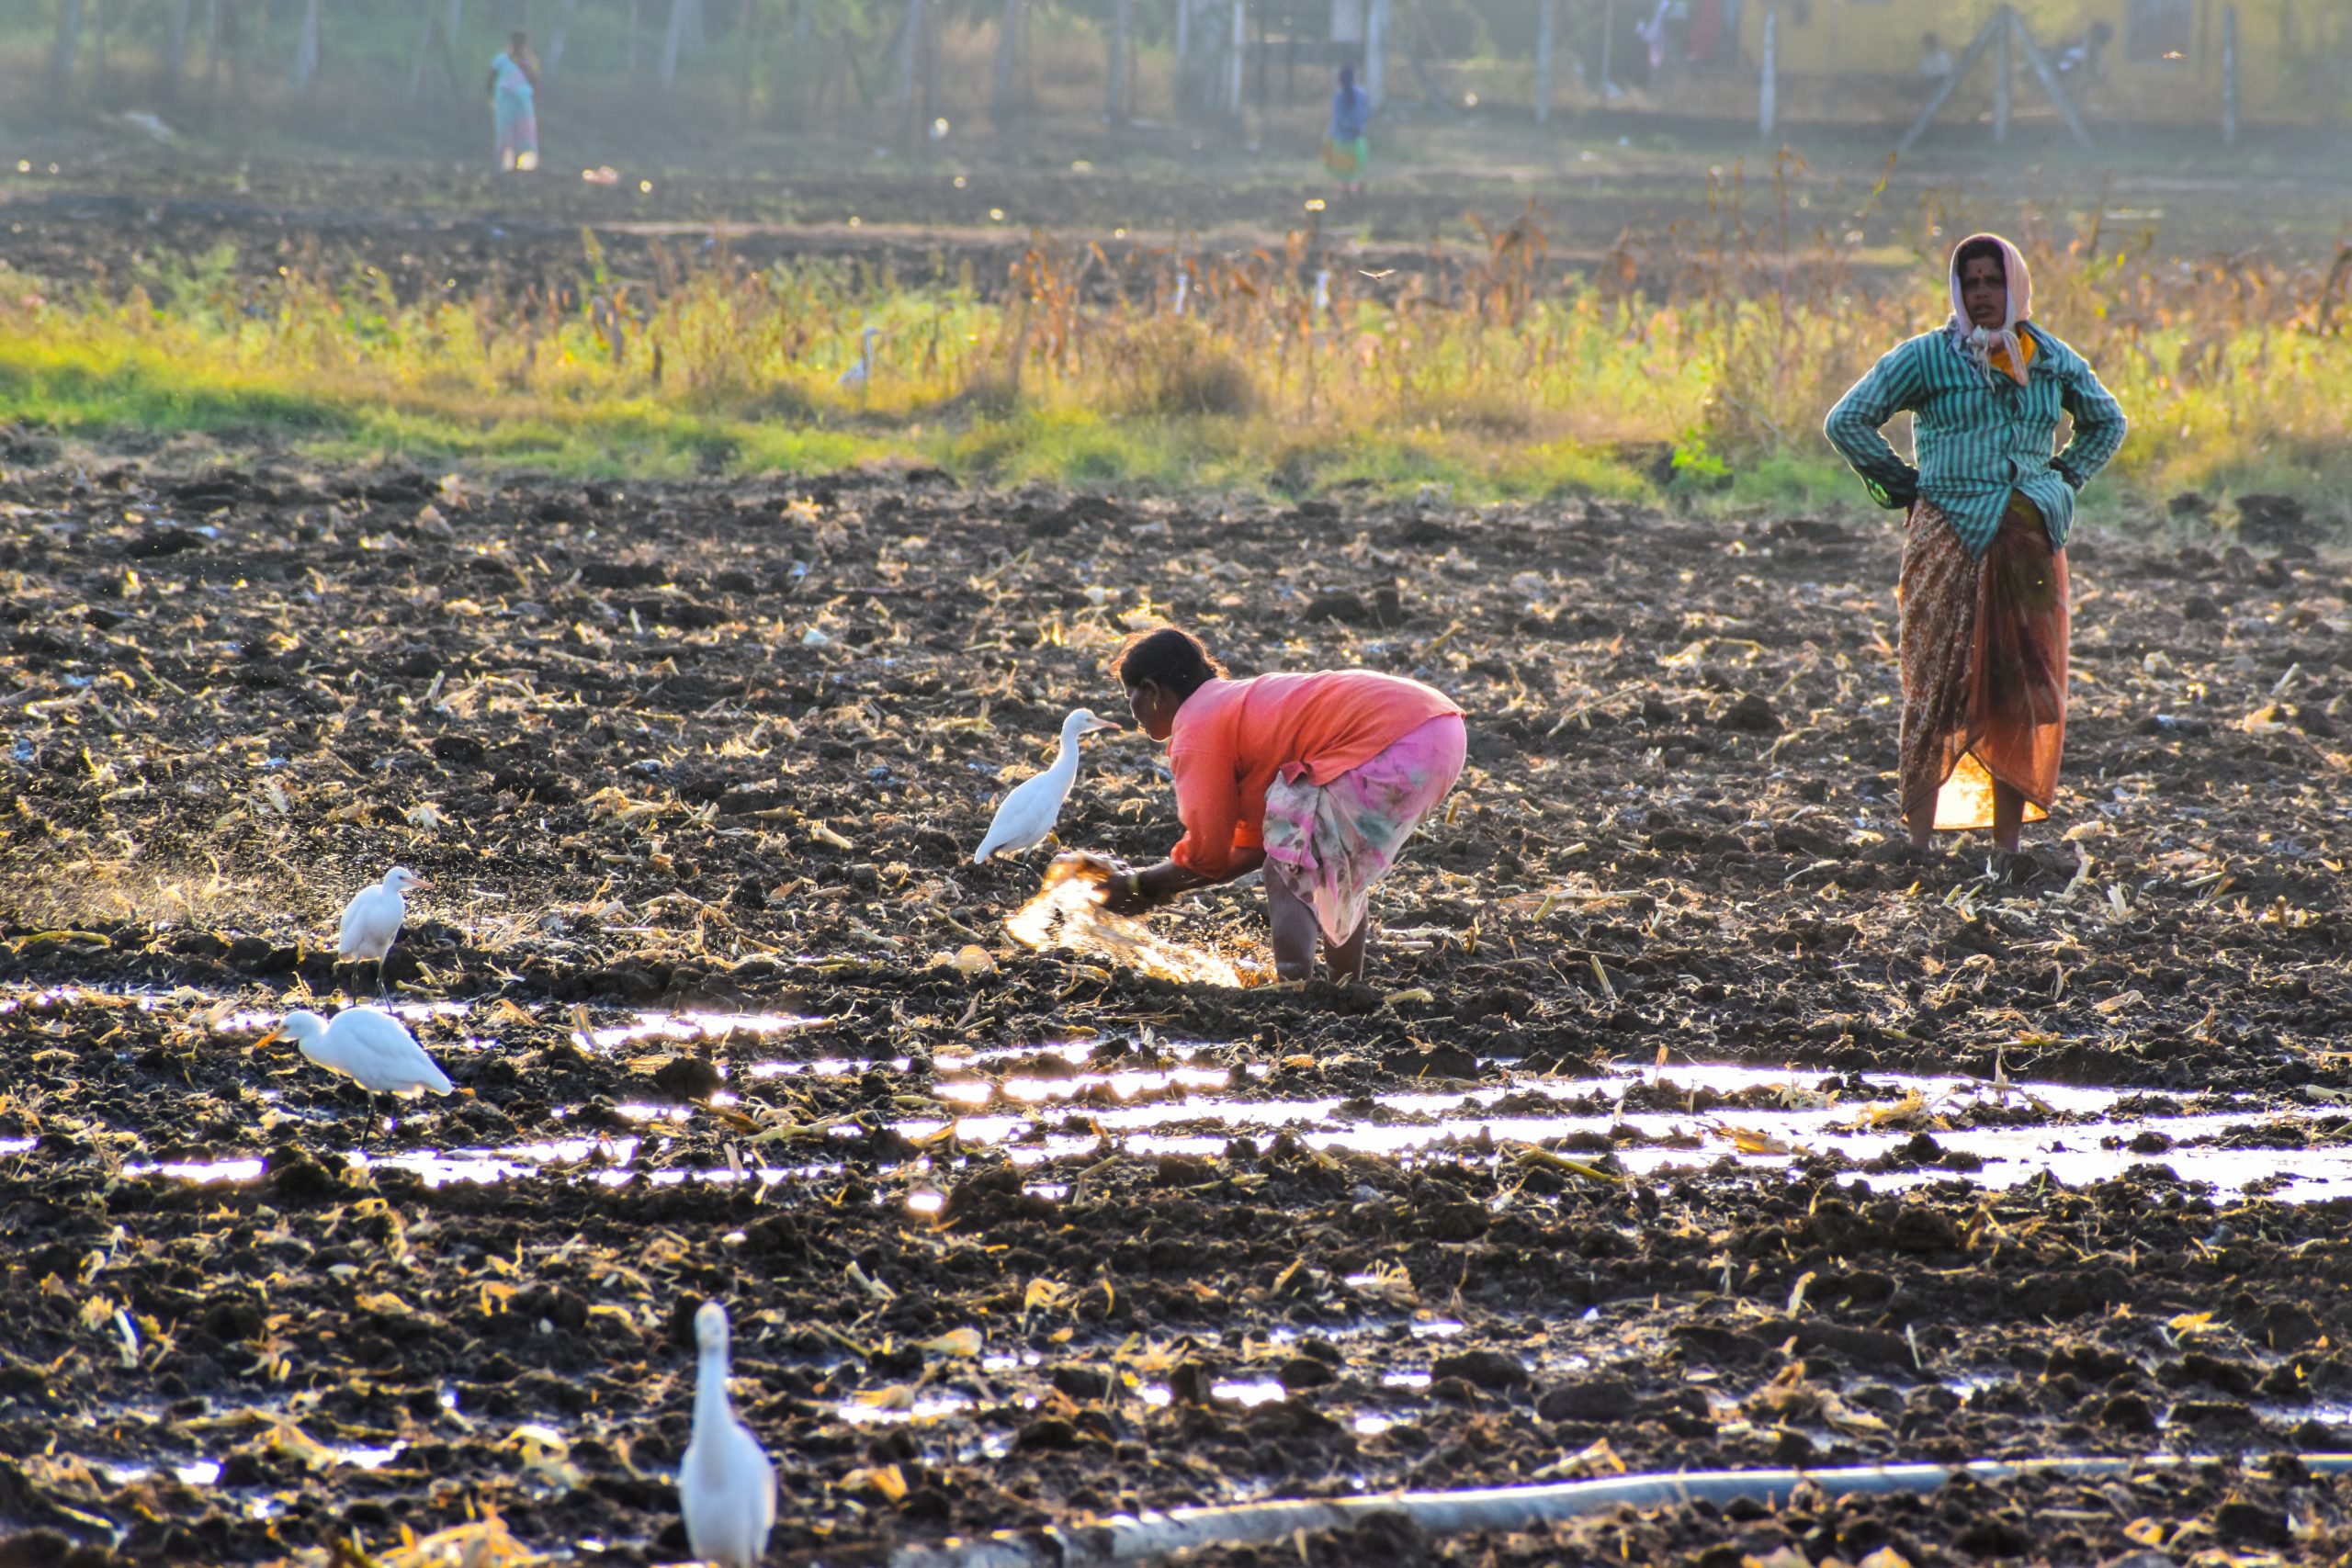 Farmers working in a field